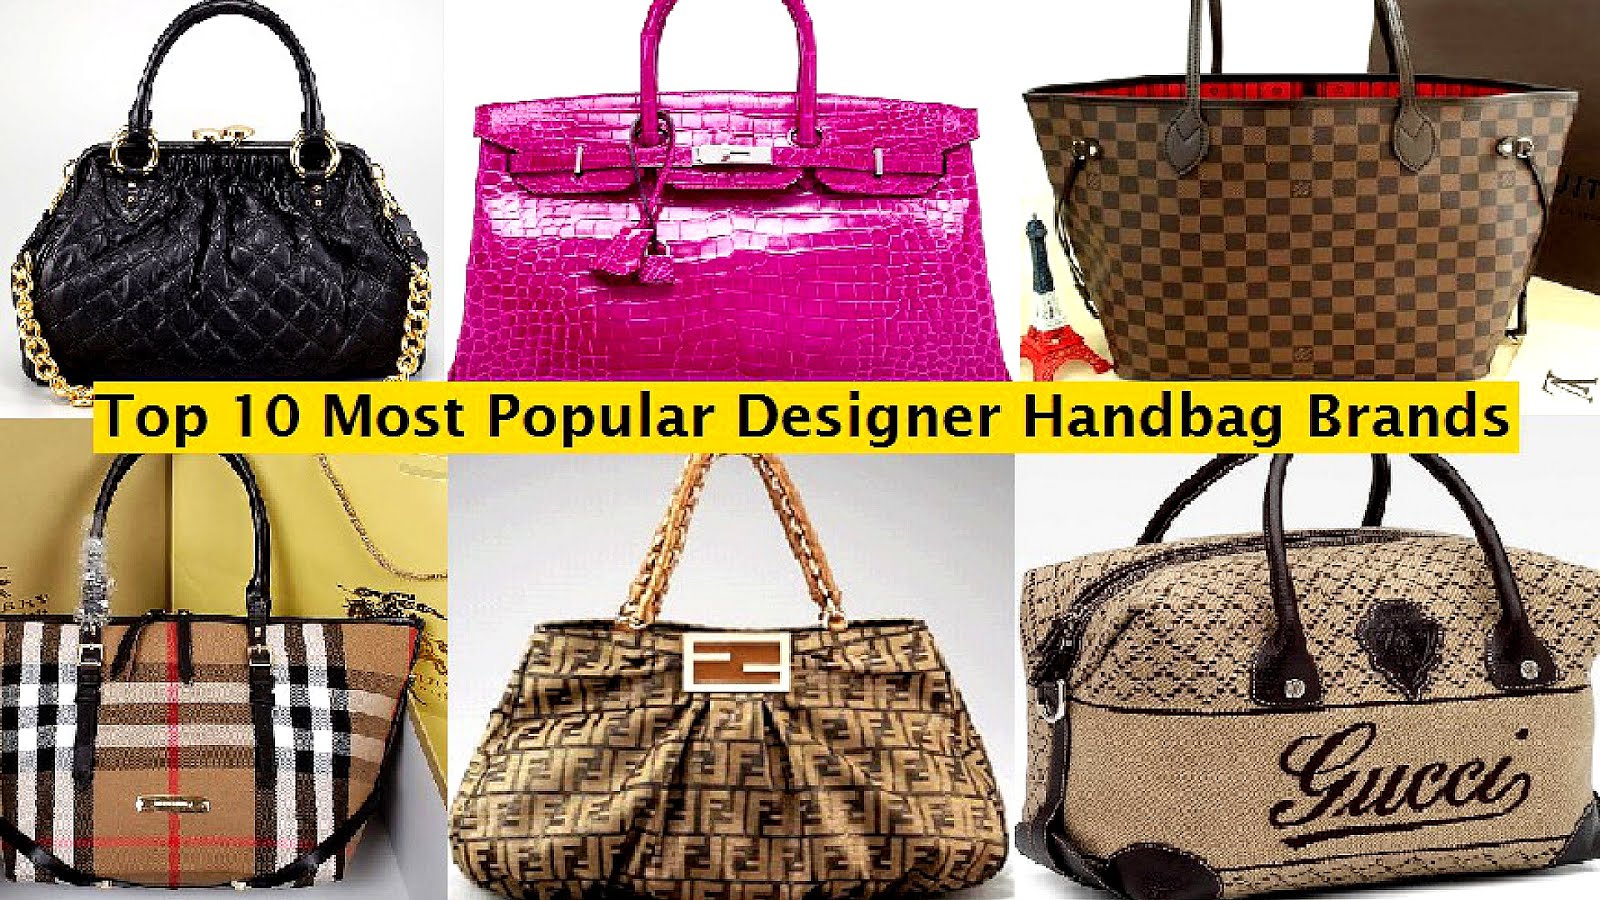 Iconic LV Monogram Women's Bags & Purses | LOUIS VUITTON ®